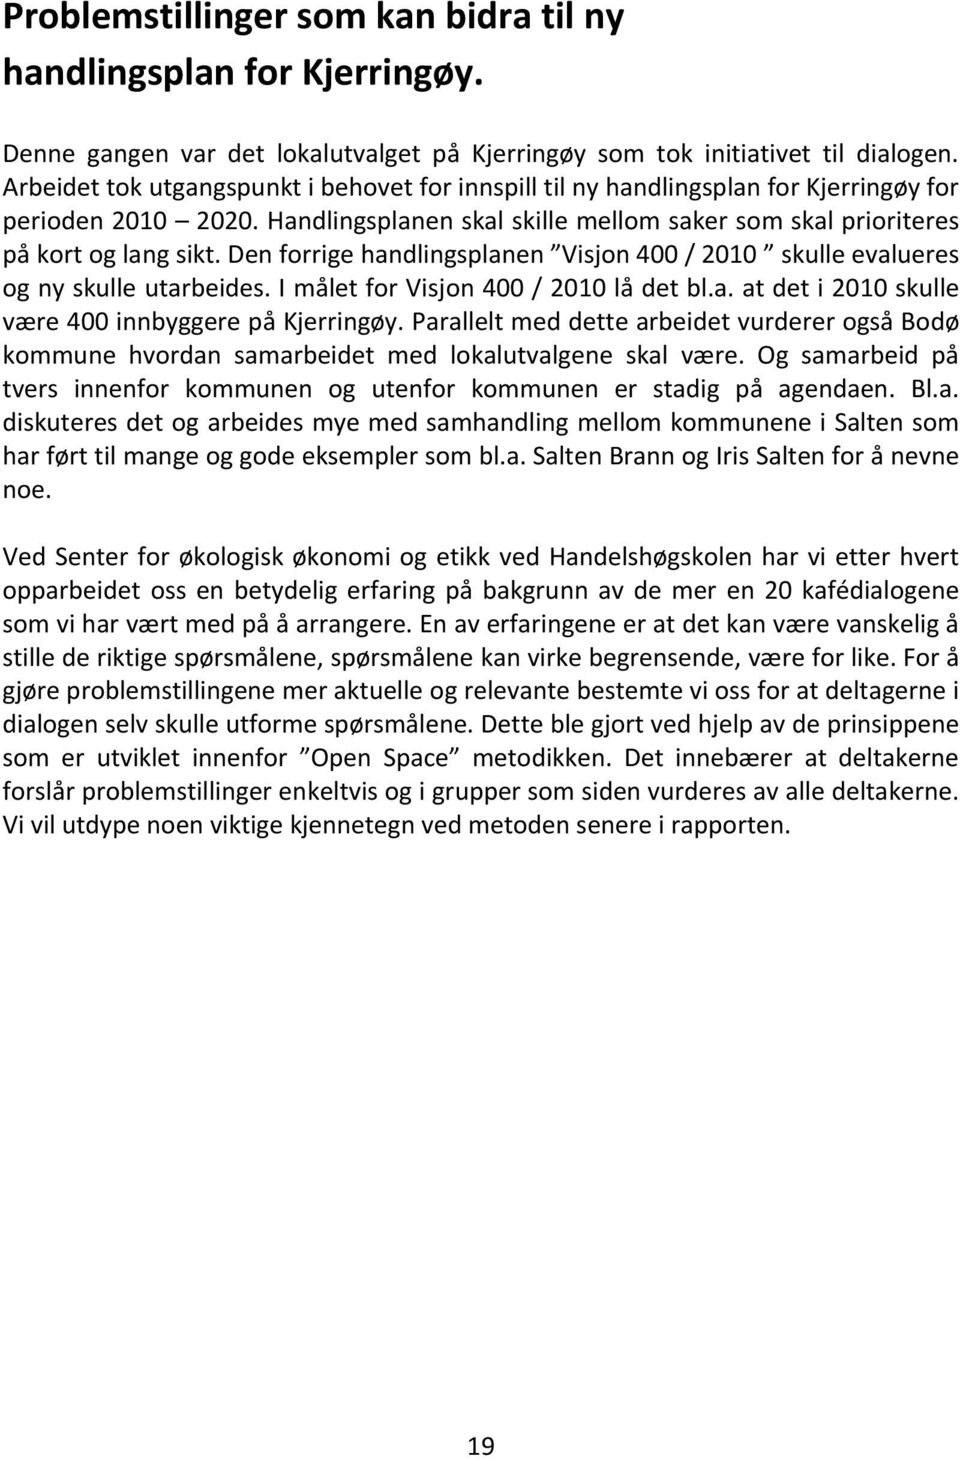 Den forrige handlingsplanen Visjon 400 / 2010 skulle evalueres og ny skulle utarbeides. I målet for Visjon 400 / 2010 lå det bl.a. at det i 2010 skulle være 400 innbyggere på Kjerringøy.